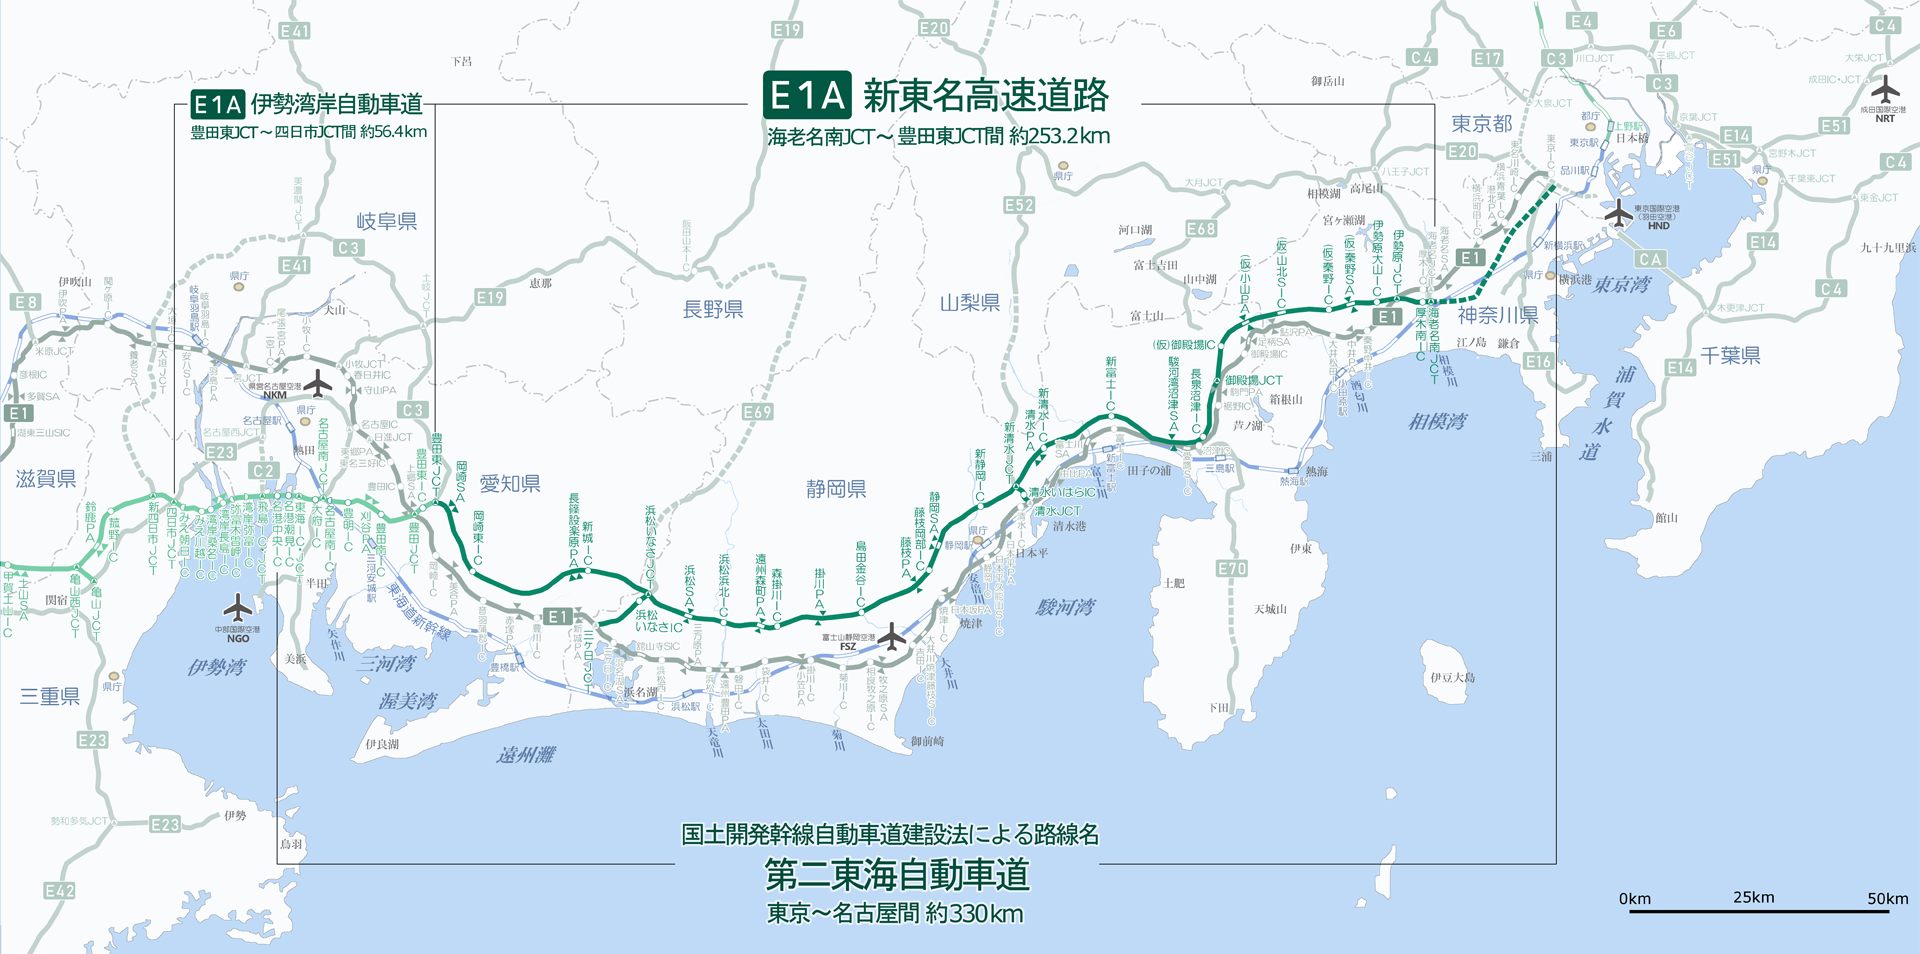 新東名高速道路の2019年（平成31年）3月現在の路線図。出典:https://commons.wikimedia.org/wiki/File:Shin-Tomei_Expwy_JD19l22a.svg